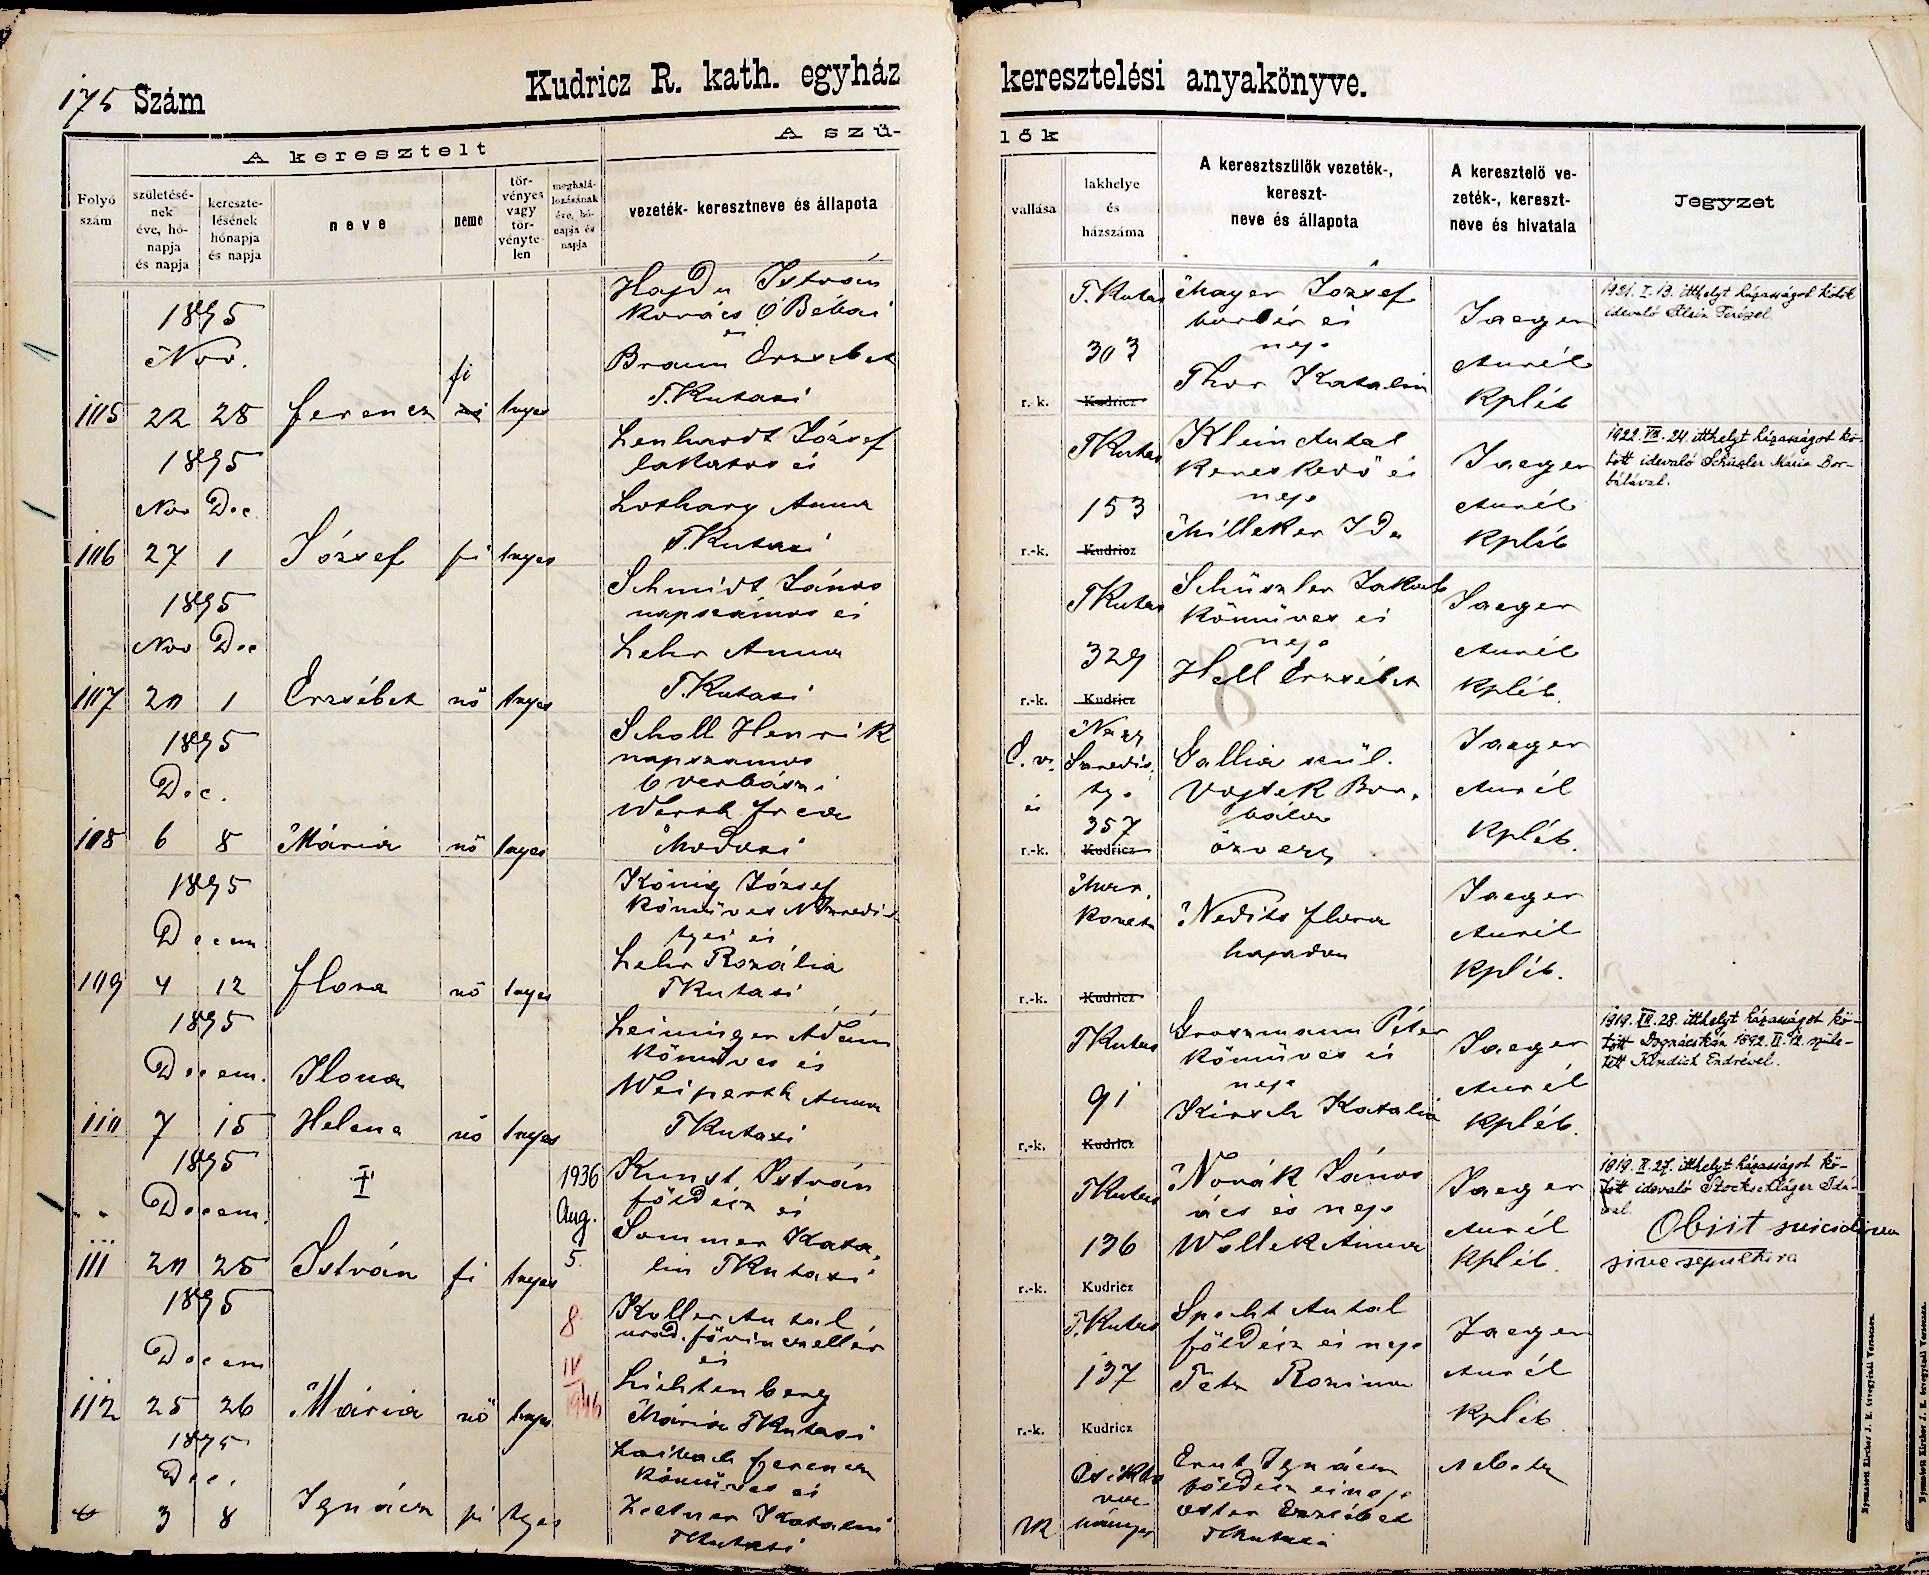 images/church_records/BIRTHS/1884-1899B/1895/175Q